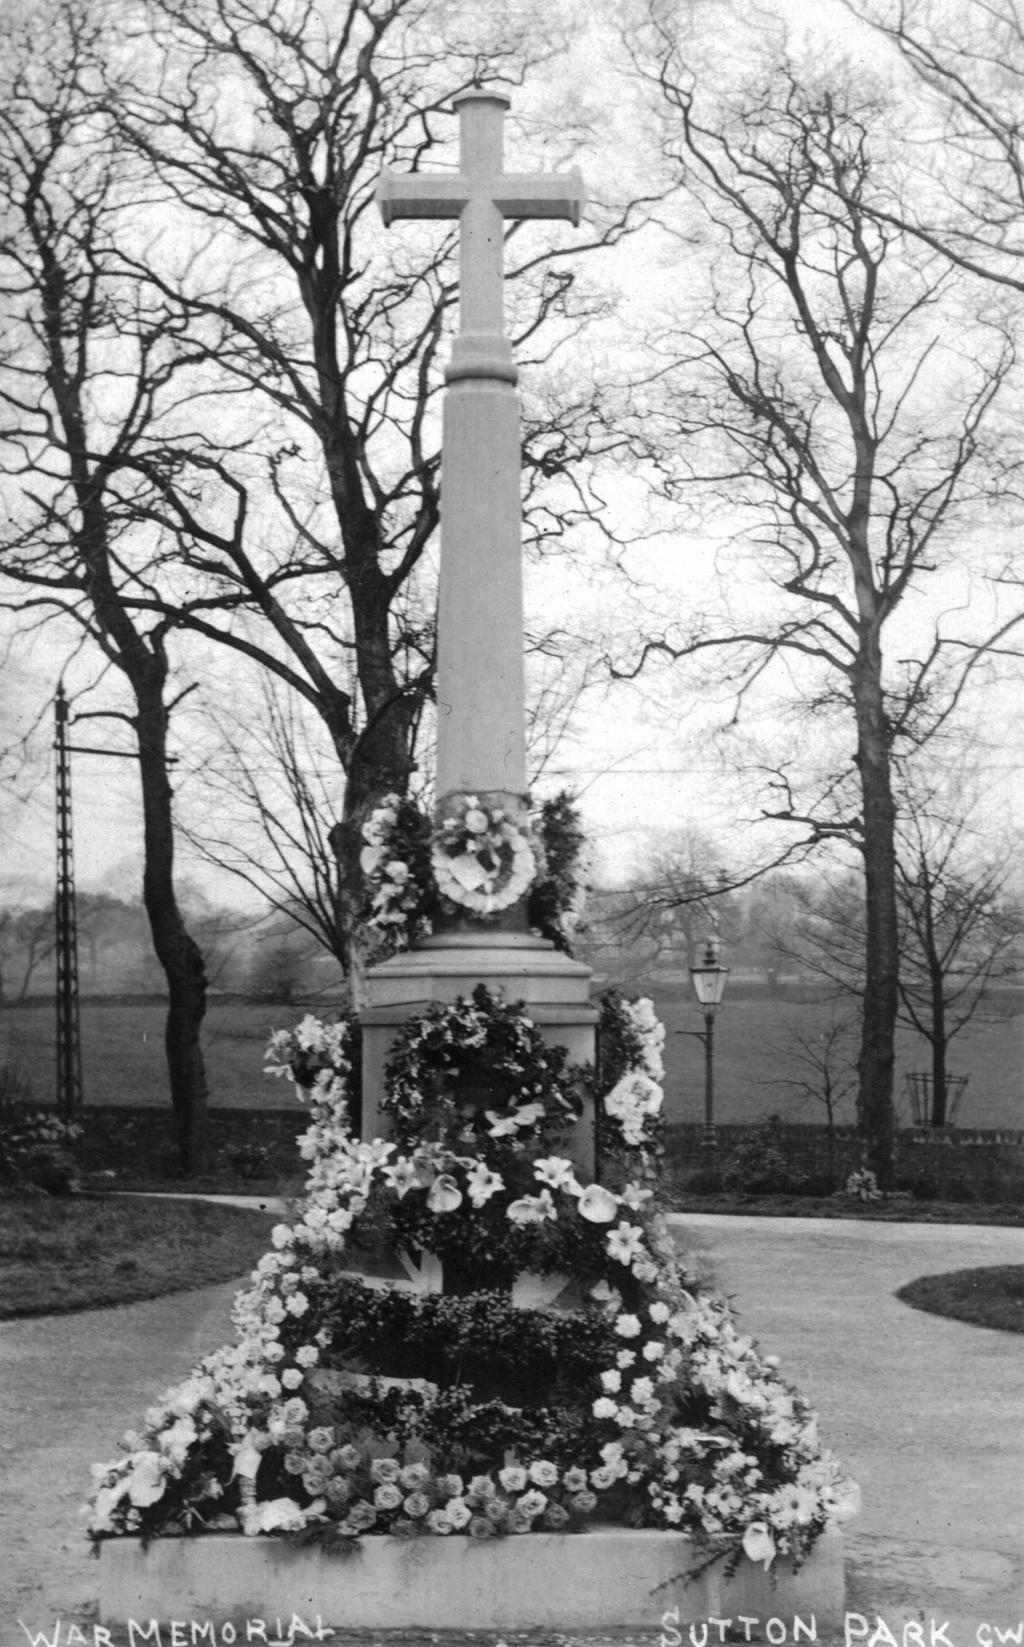 Sutton-in-Craven War Memorial (source: Rachel Simpson